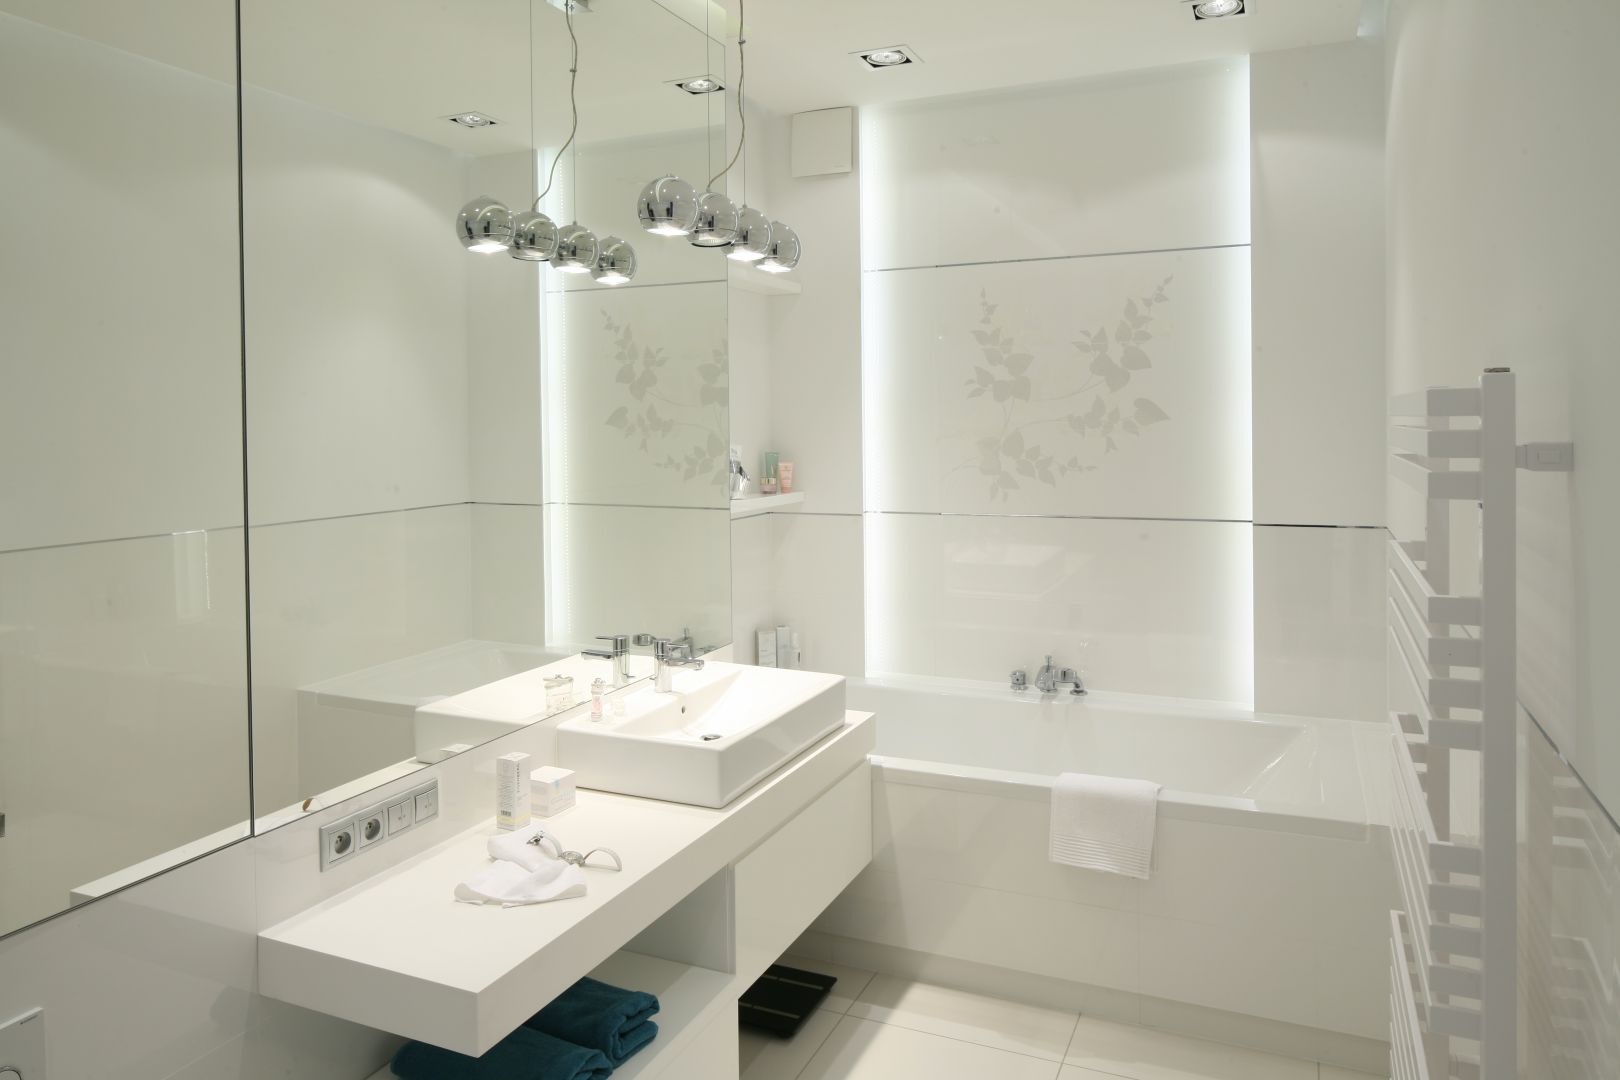 Biel jest doskonałym kolorem do małej łazienki. Nie tylko będzie wydawała się większa, ale również czystsza. Projekt: Anna Maria Sokołowska. Fot. Bartosz Jarosz